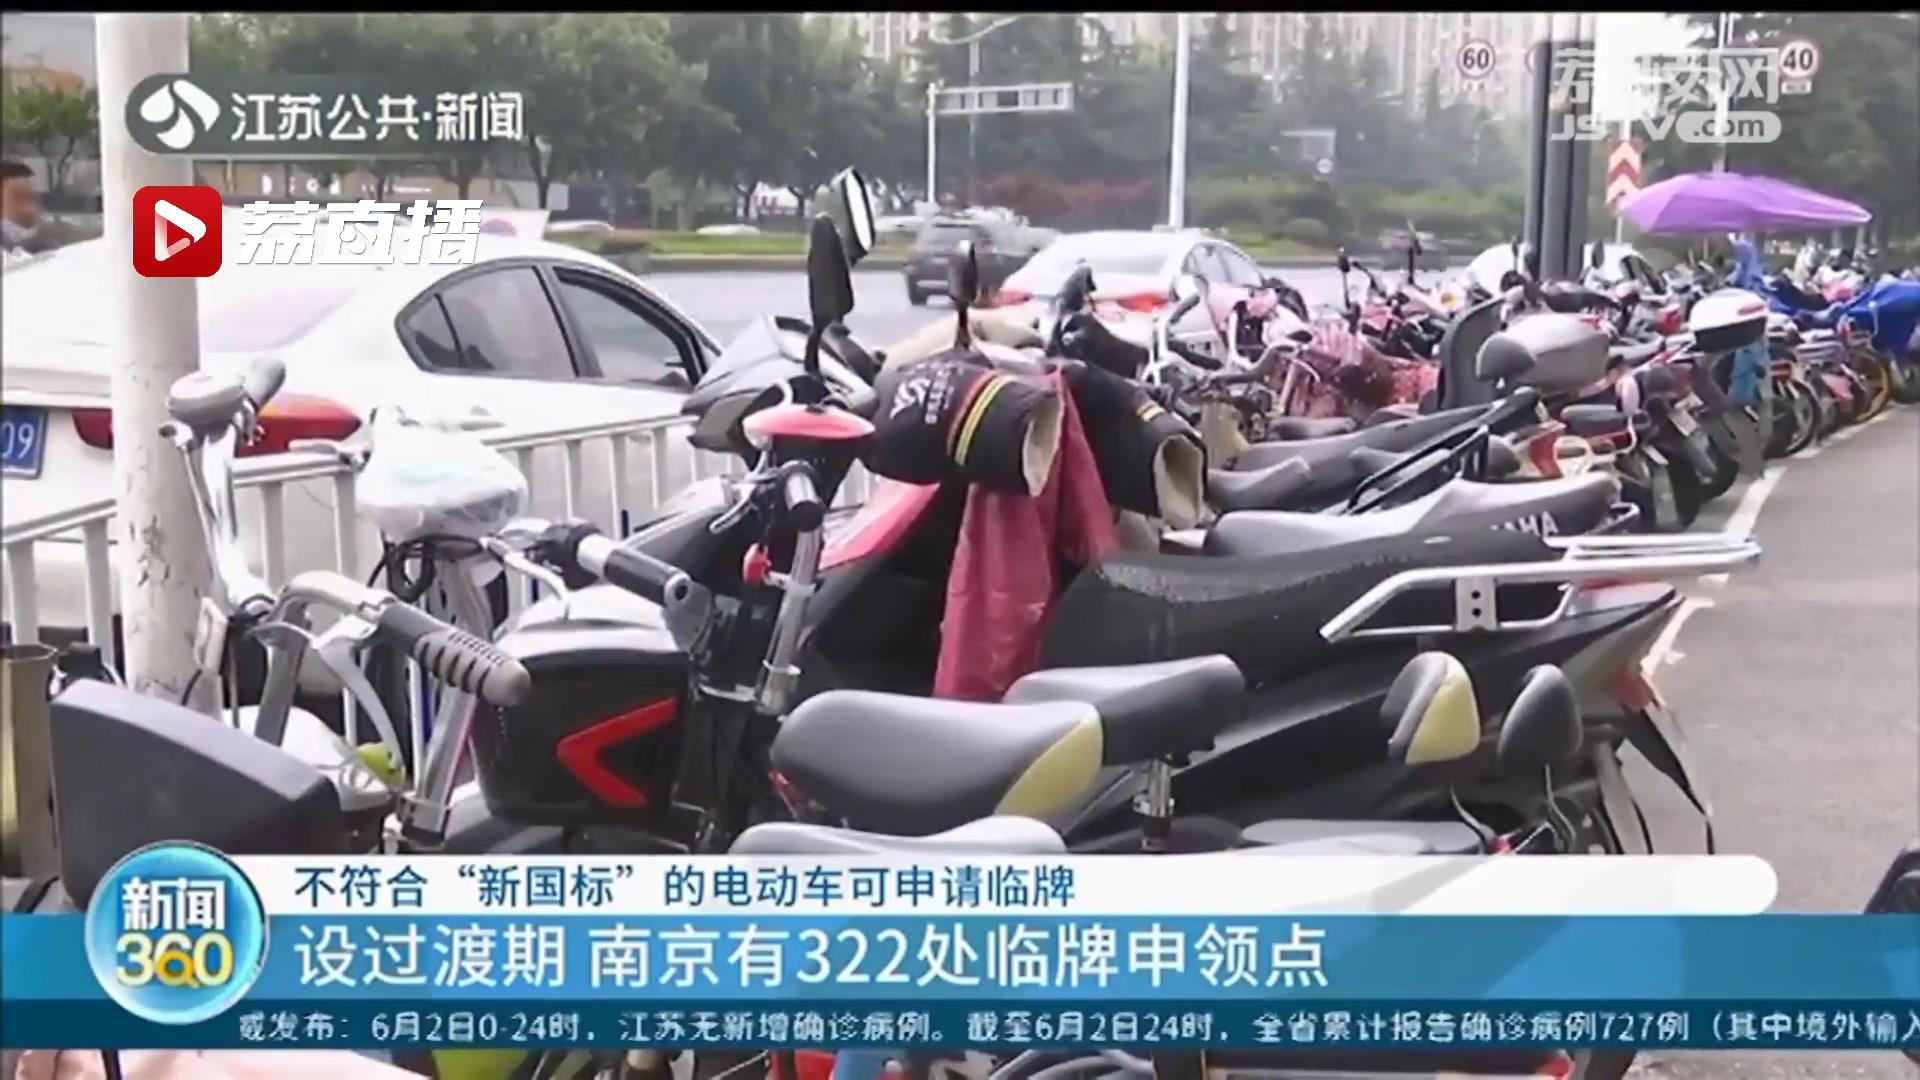 南京不符合“新国标”的电动车可申请临牌上路 有效期到明年4月14日